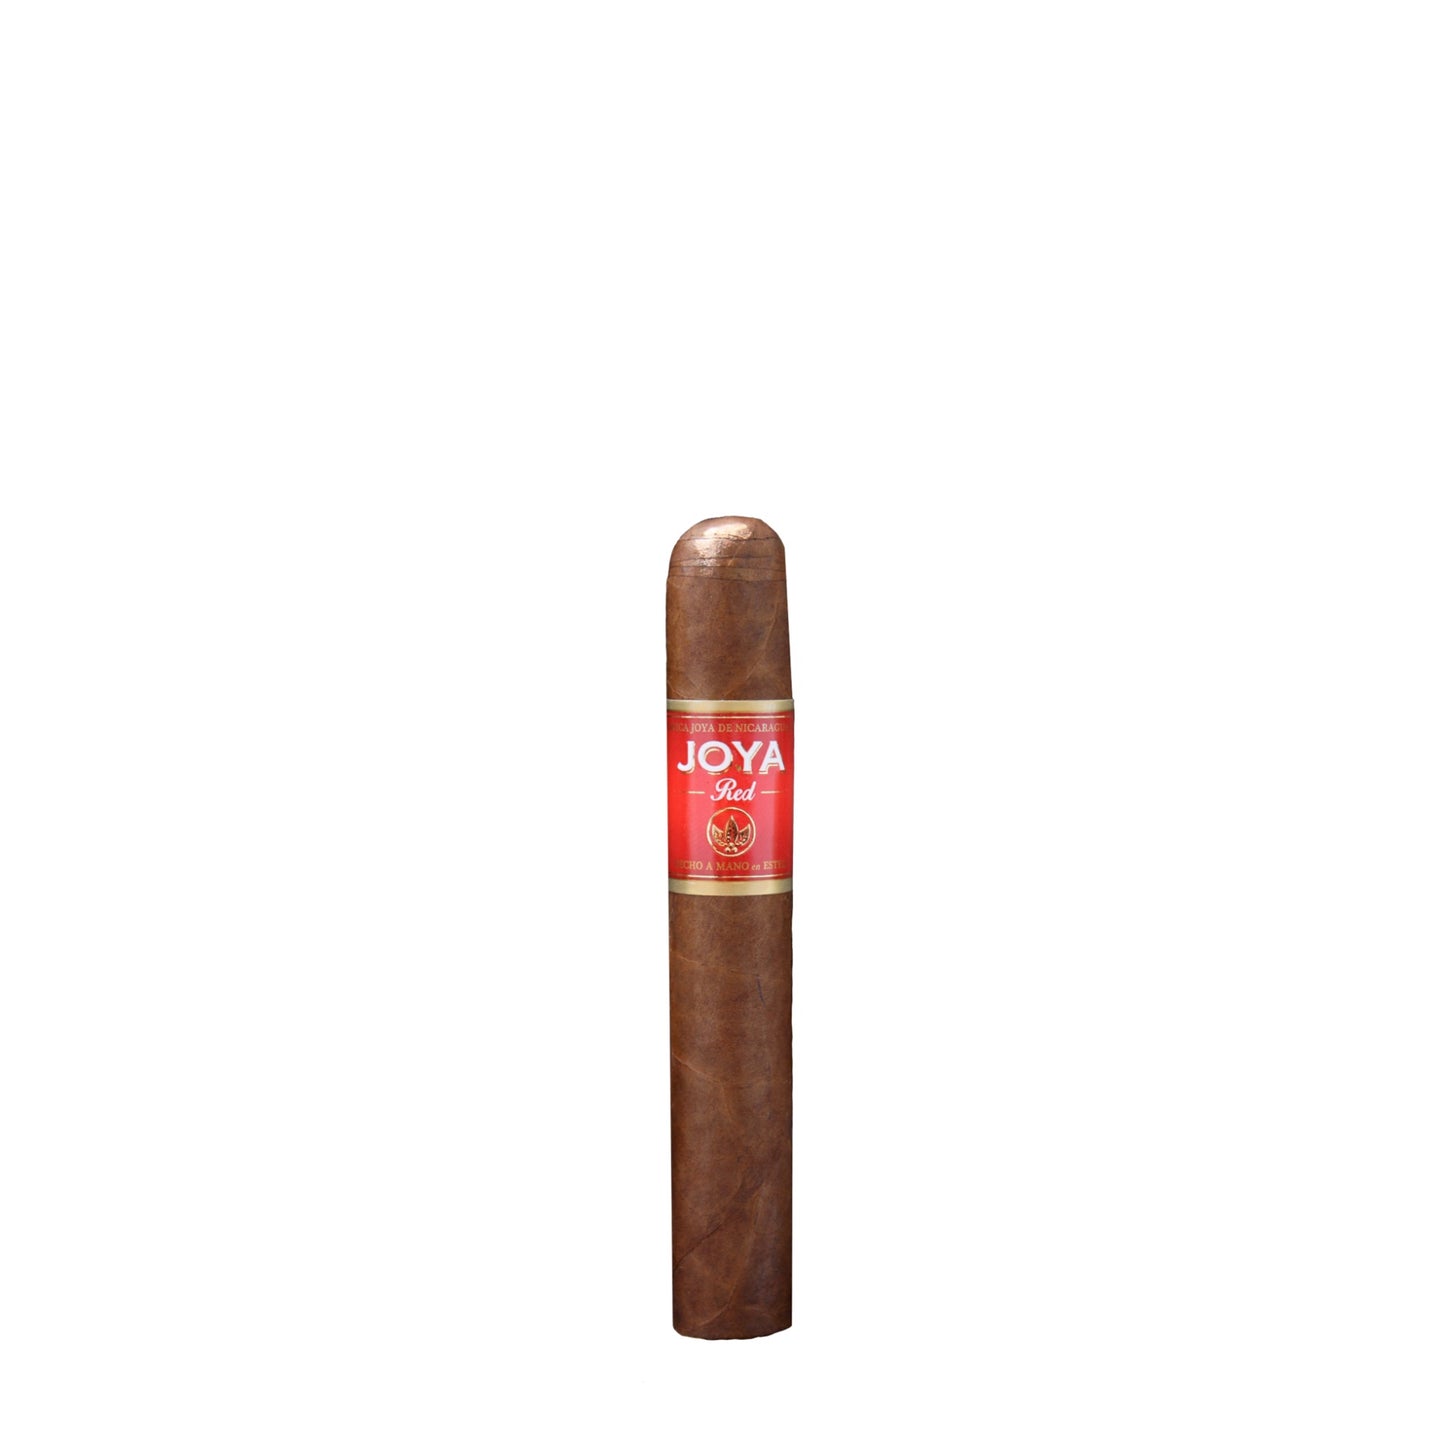 Joya de Nicaragua Red Short Churchill Cigar